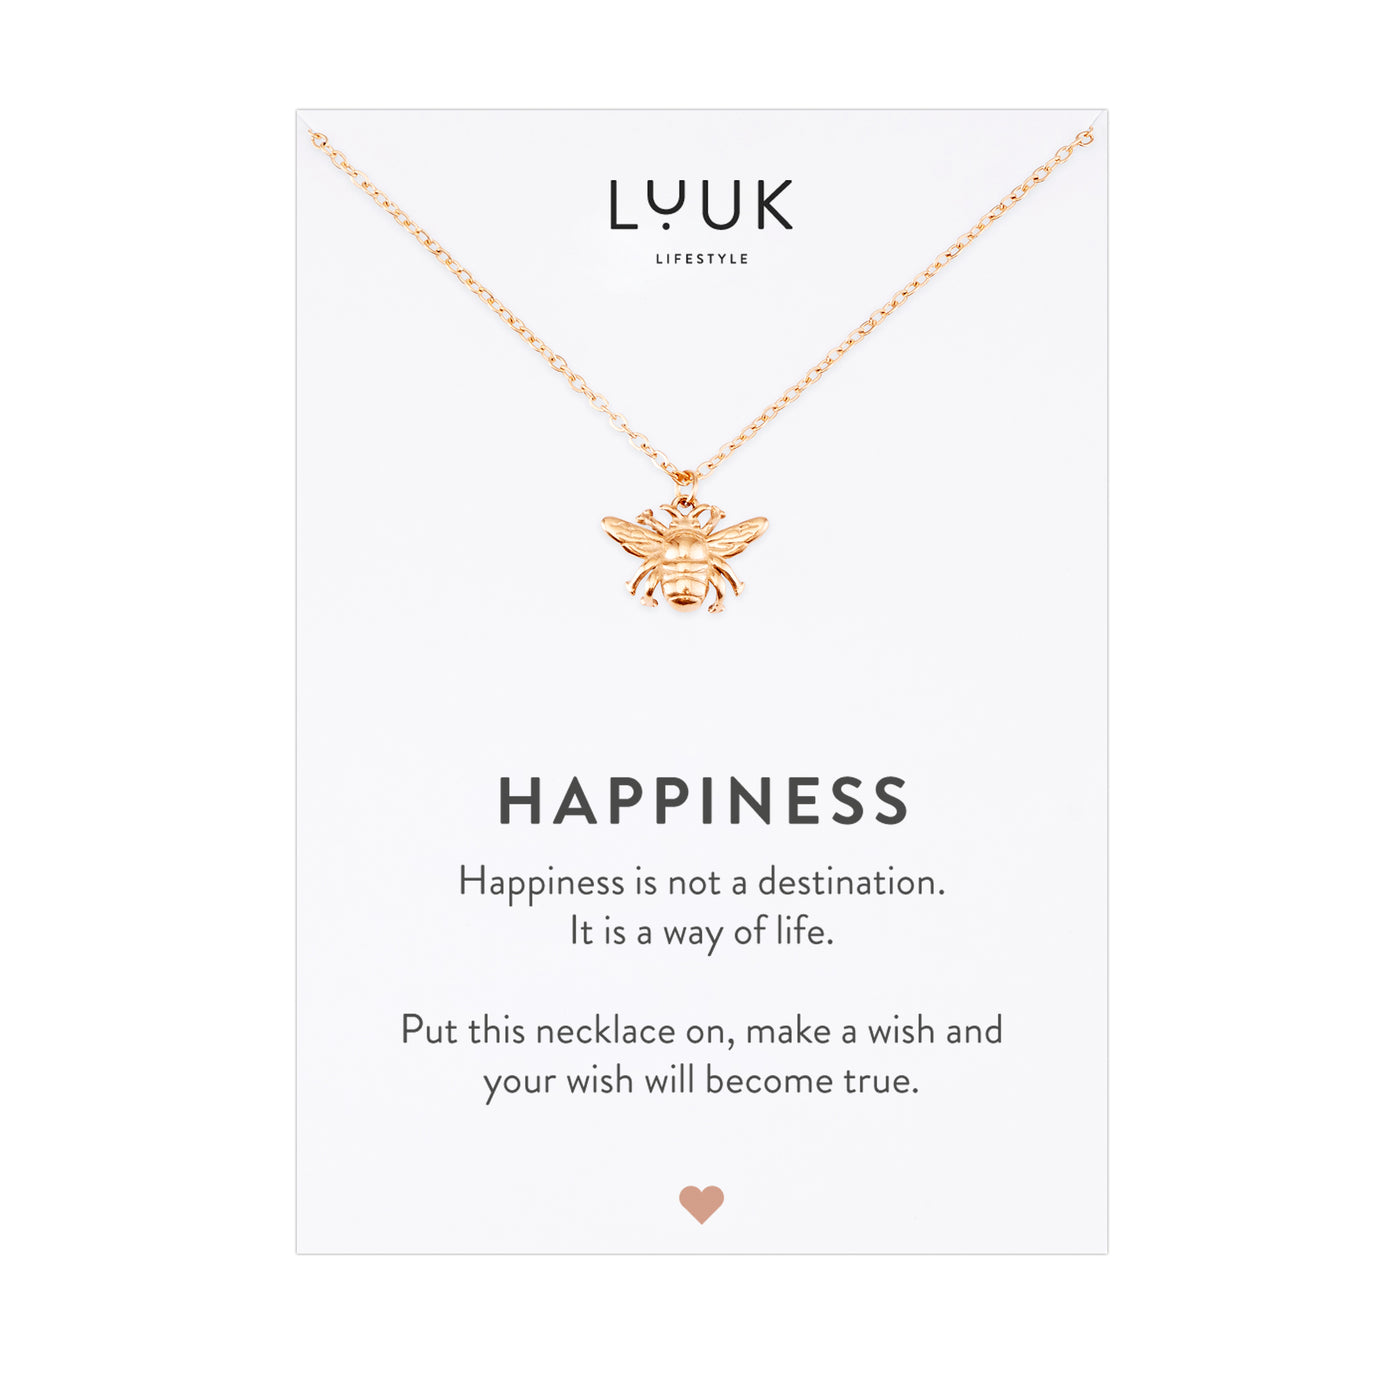 Rosegoldene Halskette mit Insekten Anhänger auf Happiness Karte von Luuk Lifestyle 